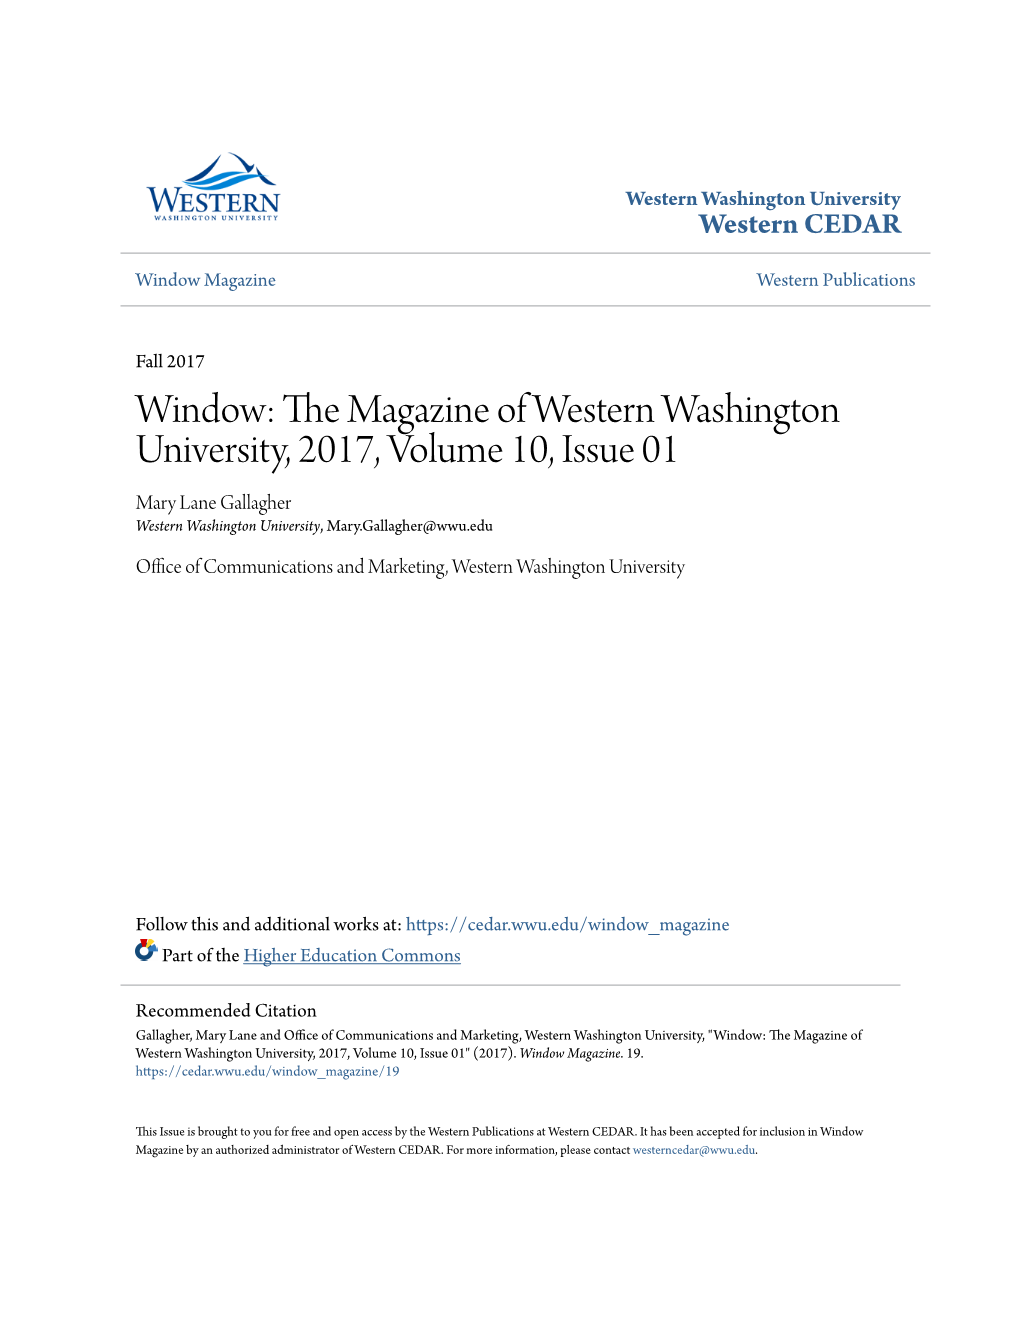 Window: the Magazine of Western Washington University, 2017